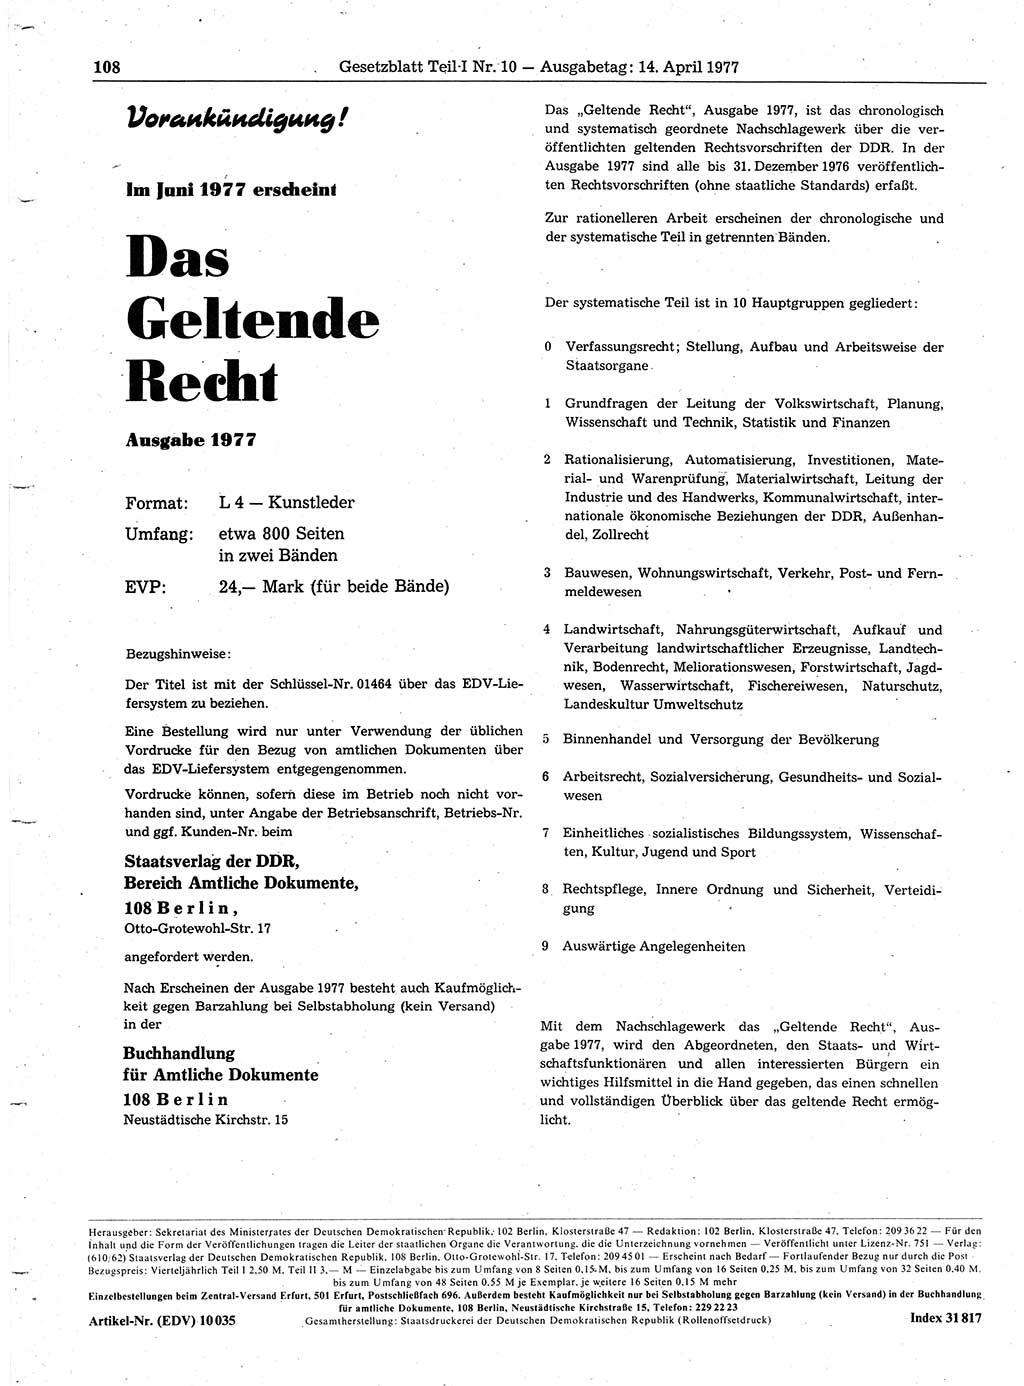 Gesetzblatt (GBl.) der Deutschen Demokratischen Republik (DDR) Teil Ⅰ 1977, Seite 108 (GBl. DDR Ⅰ 1977, S. 108)